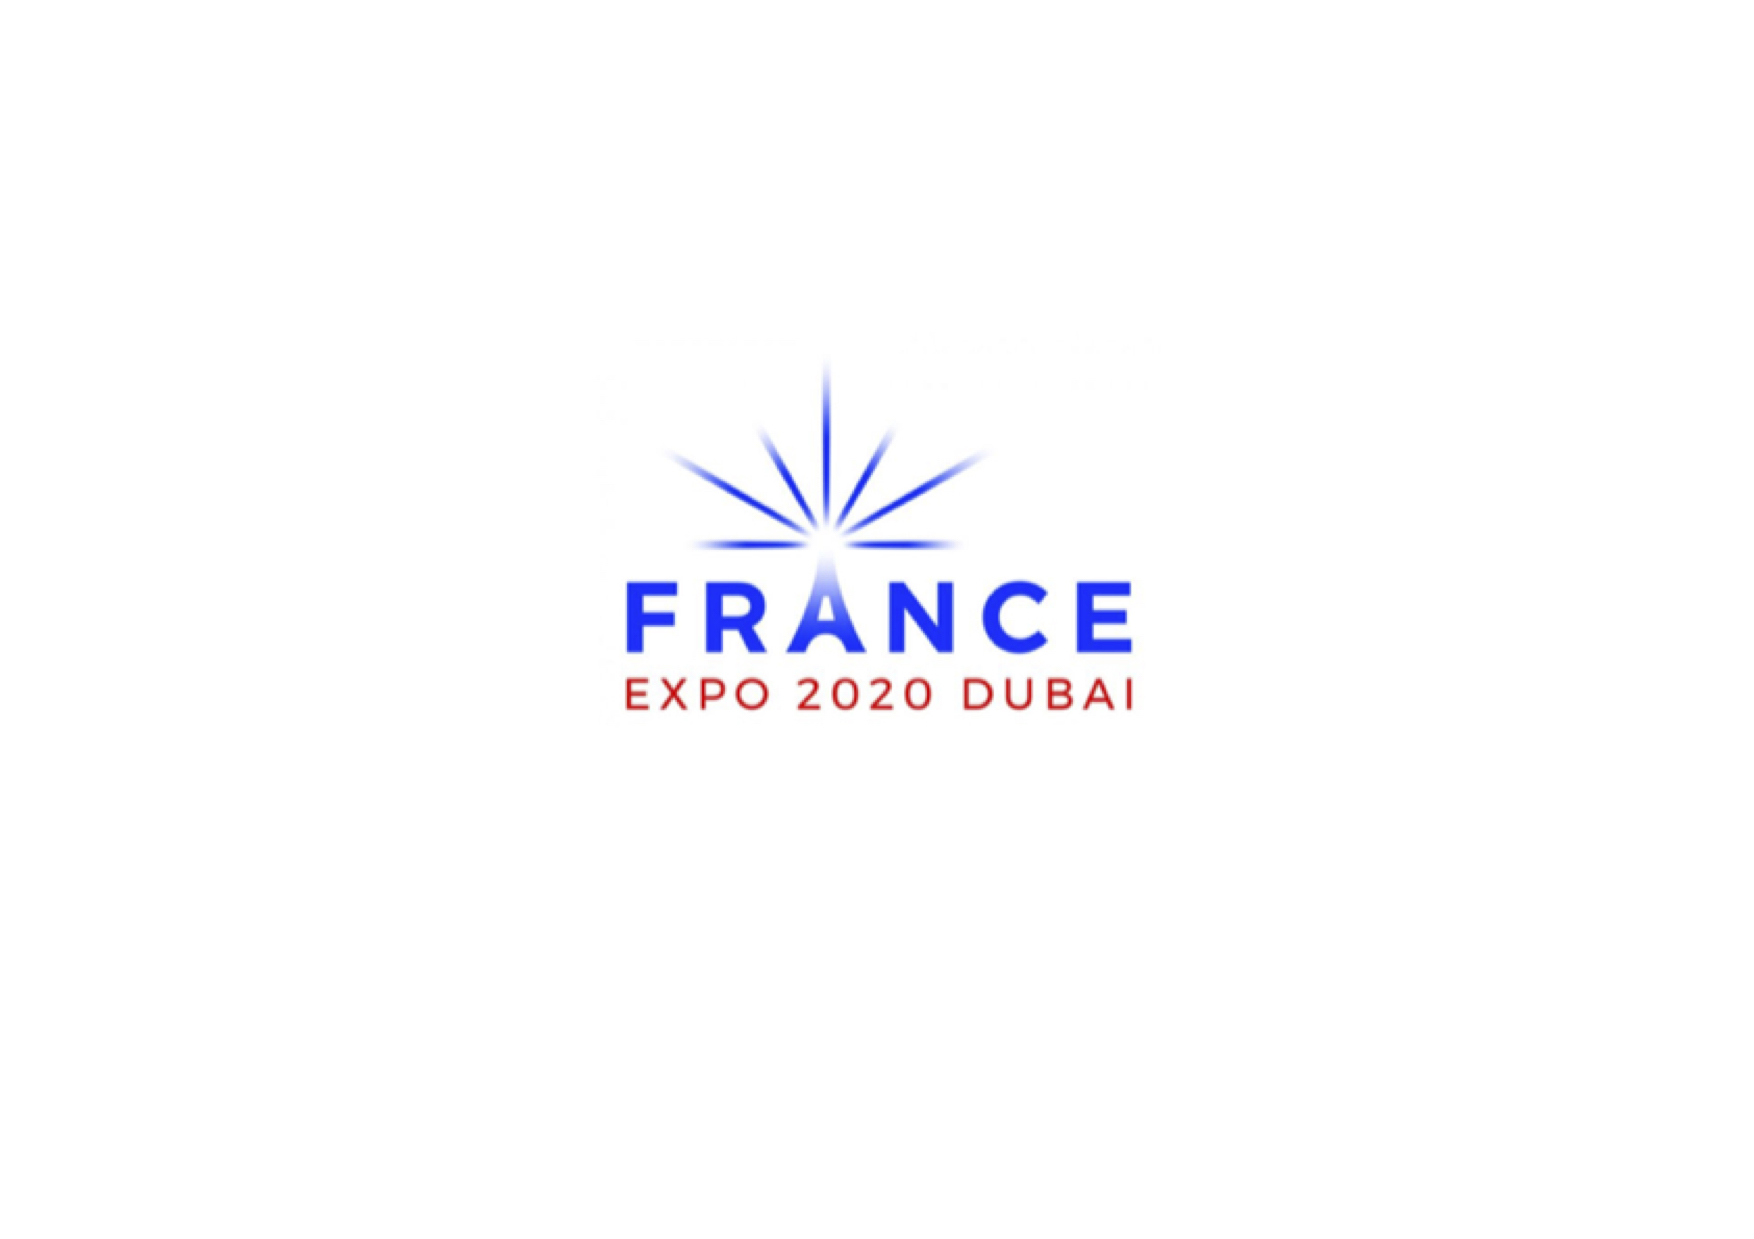  
HAVAS PARIS ET HAVAS DUBAI REMPORTENT L’ACCOMPAGNEMENT 
DE LA COMPAGNIE FRANÇAISE DES EXPOSITIONS 
À L’EXPOSITION UNIVERSELLE DUBAÏ 2020